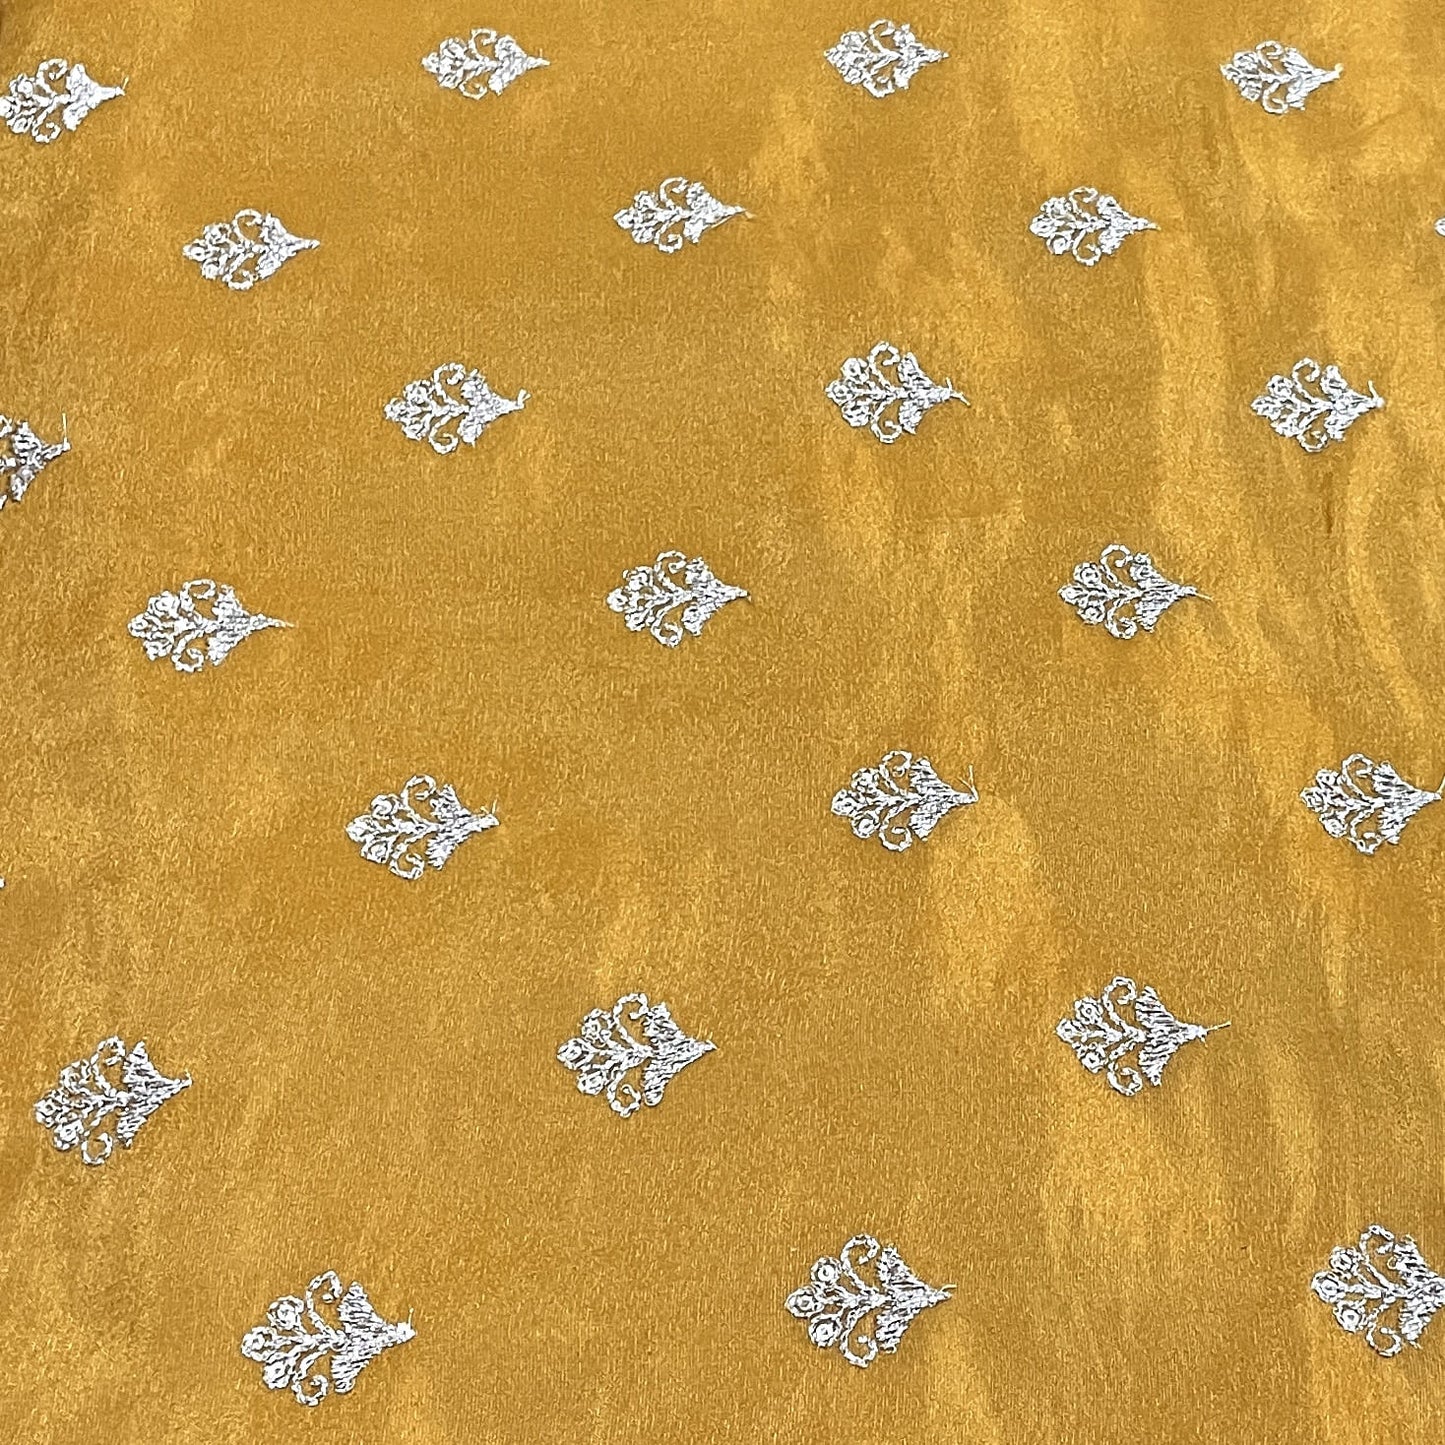 Classic Mustard Yellow Floral Buti Zari Embroidery Tissue Organza Fabric